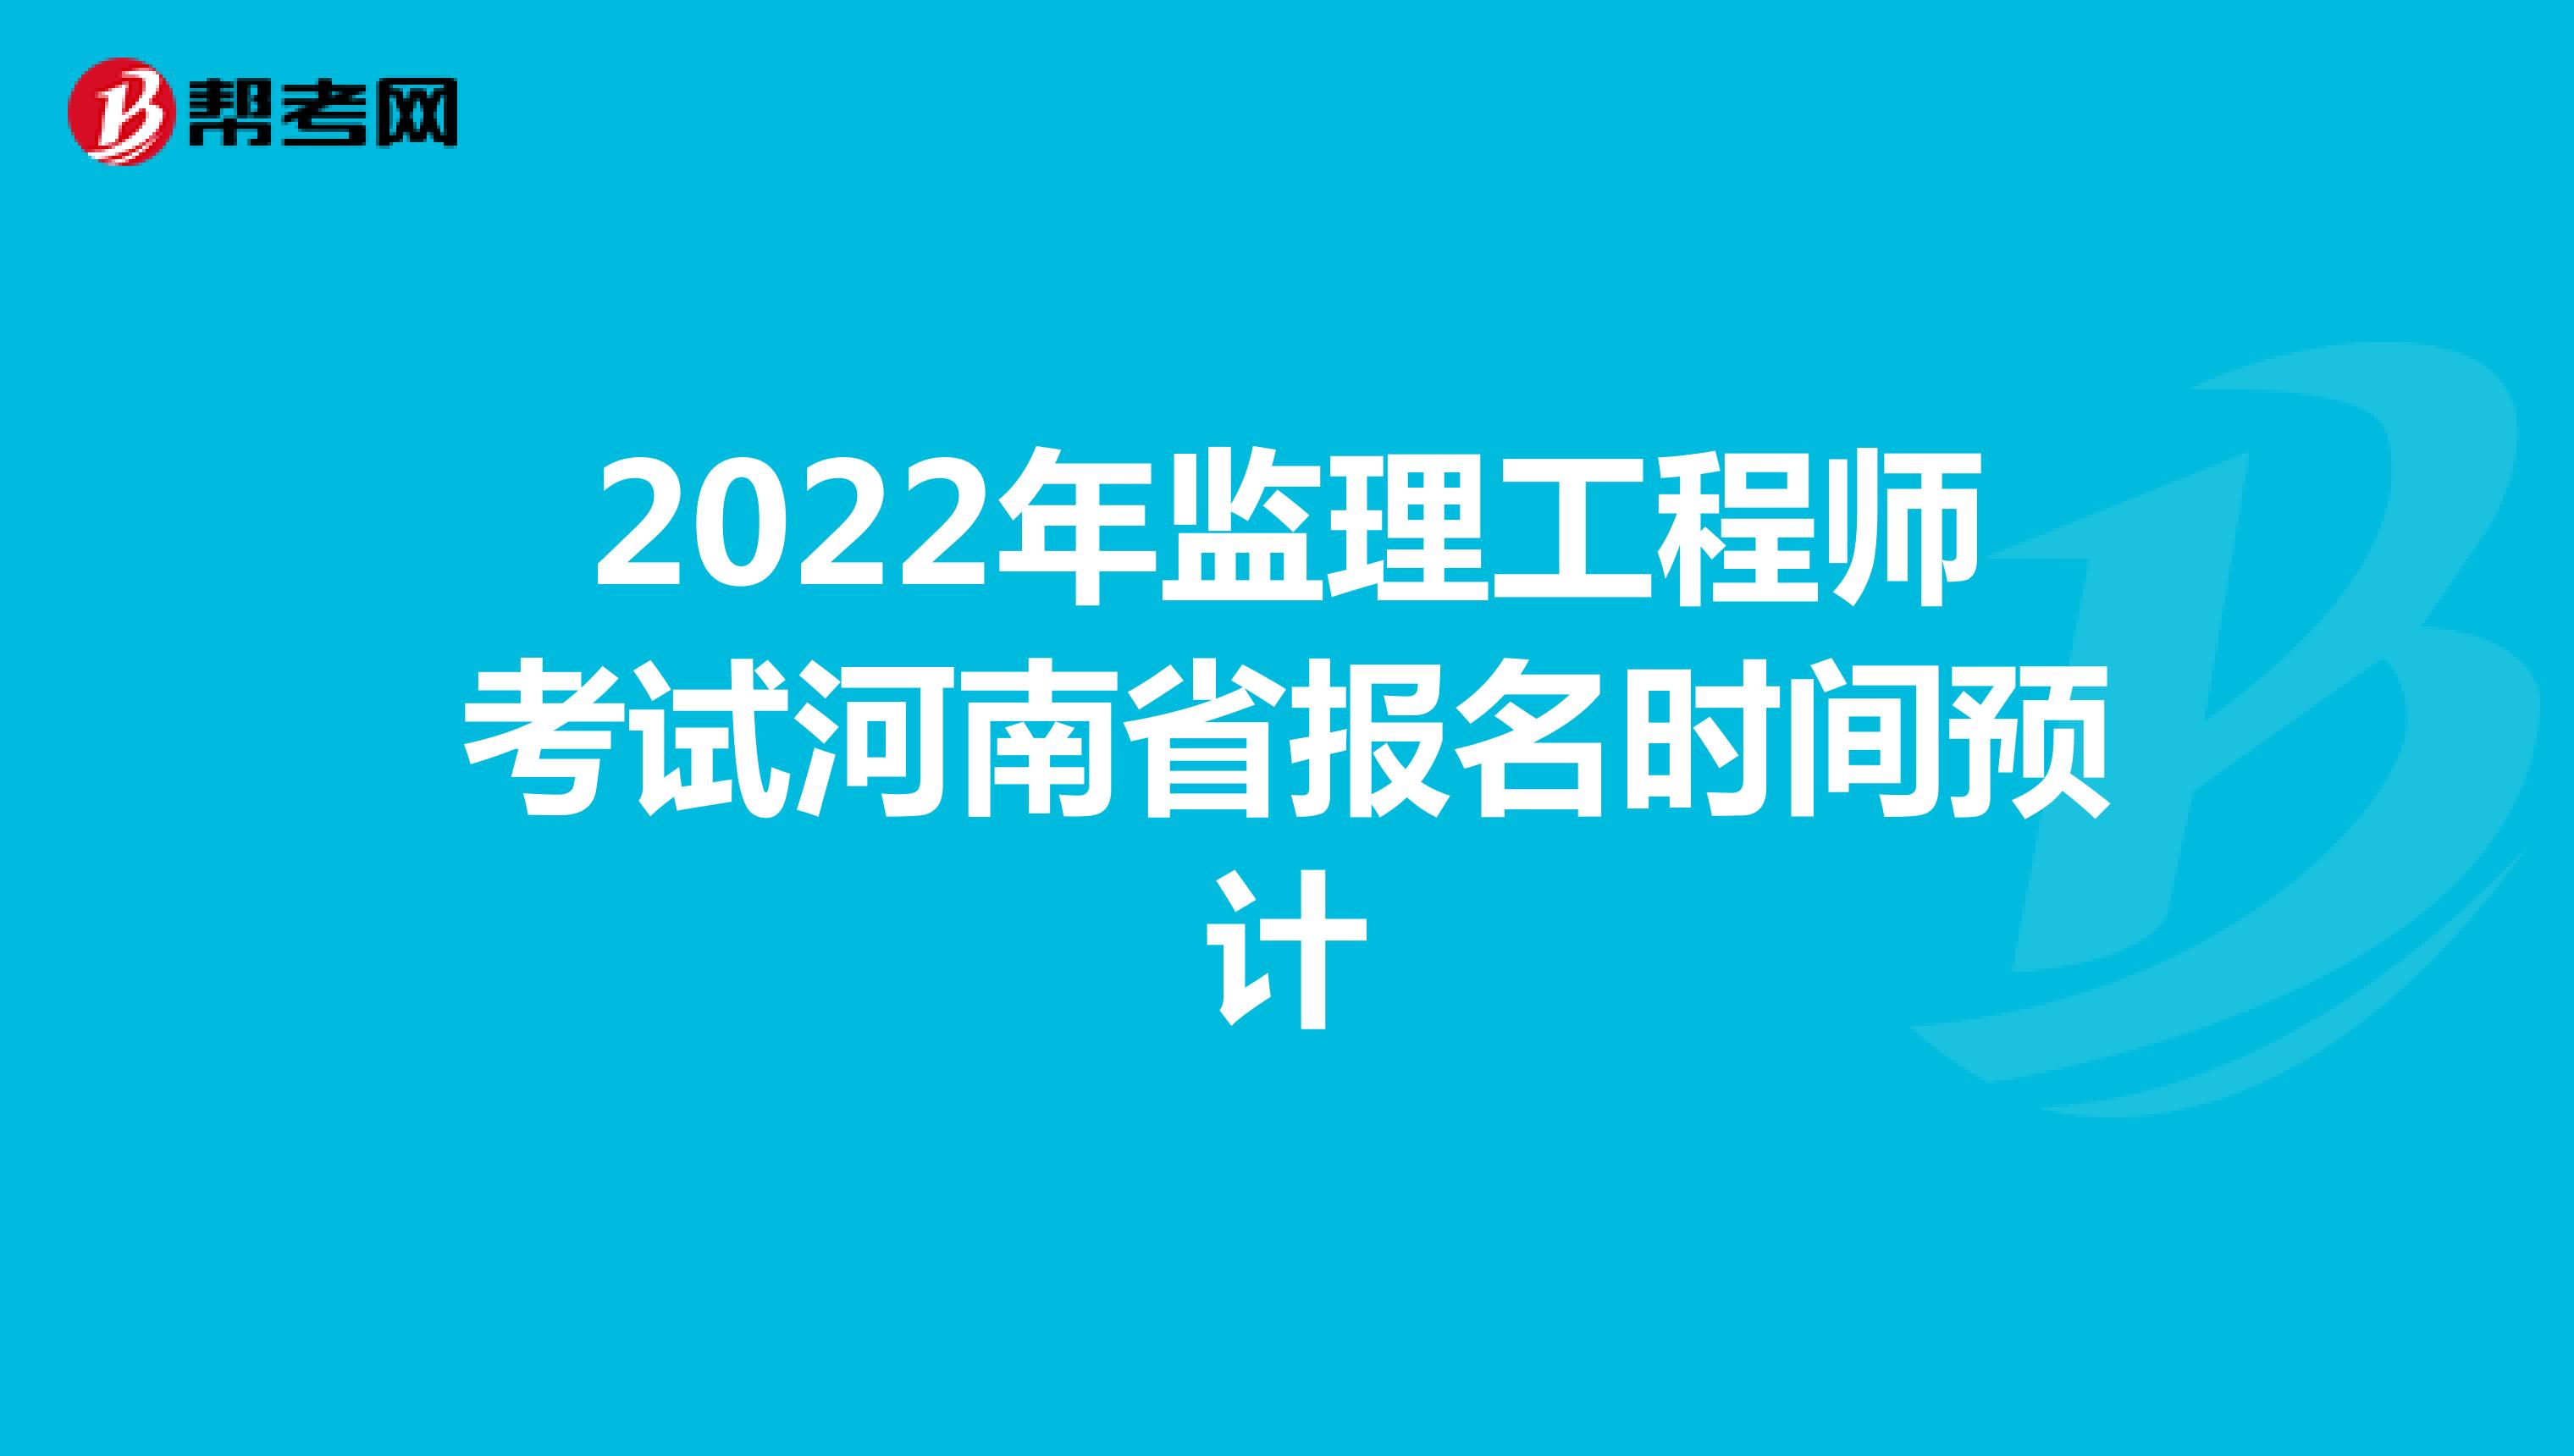 2022年监理工程师考试河南省报名时间预计